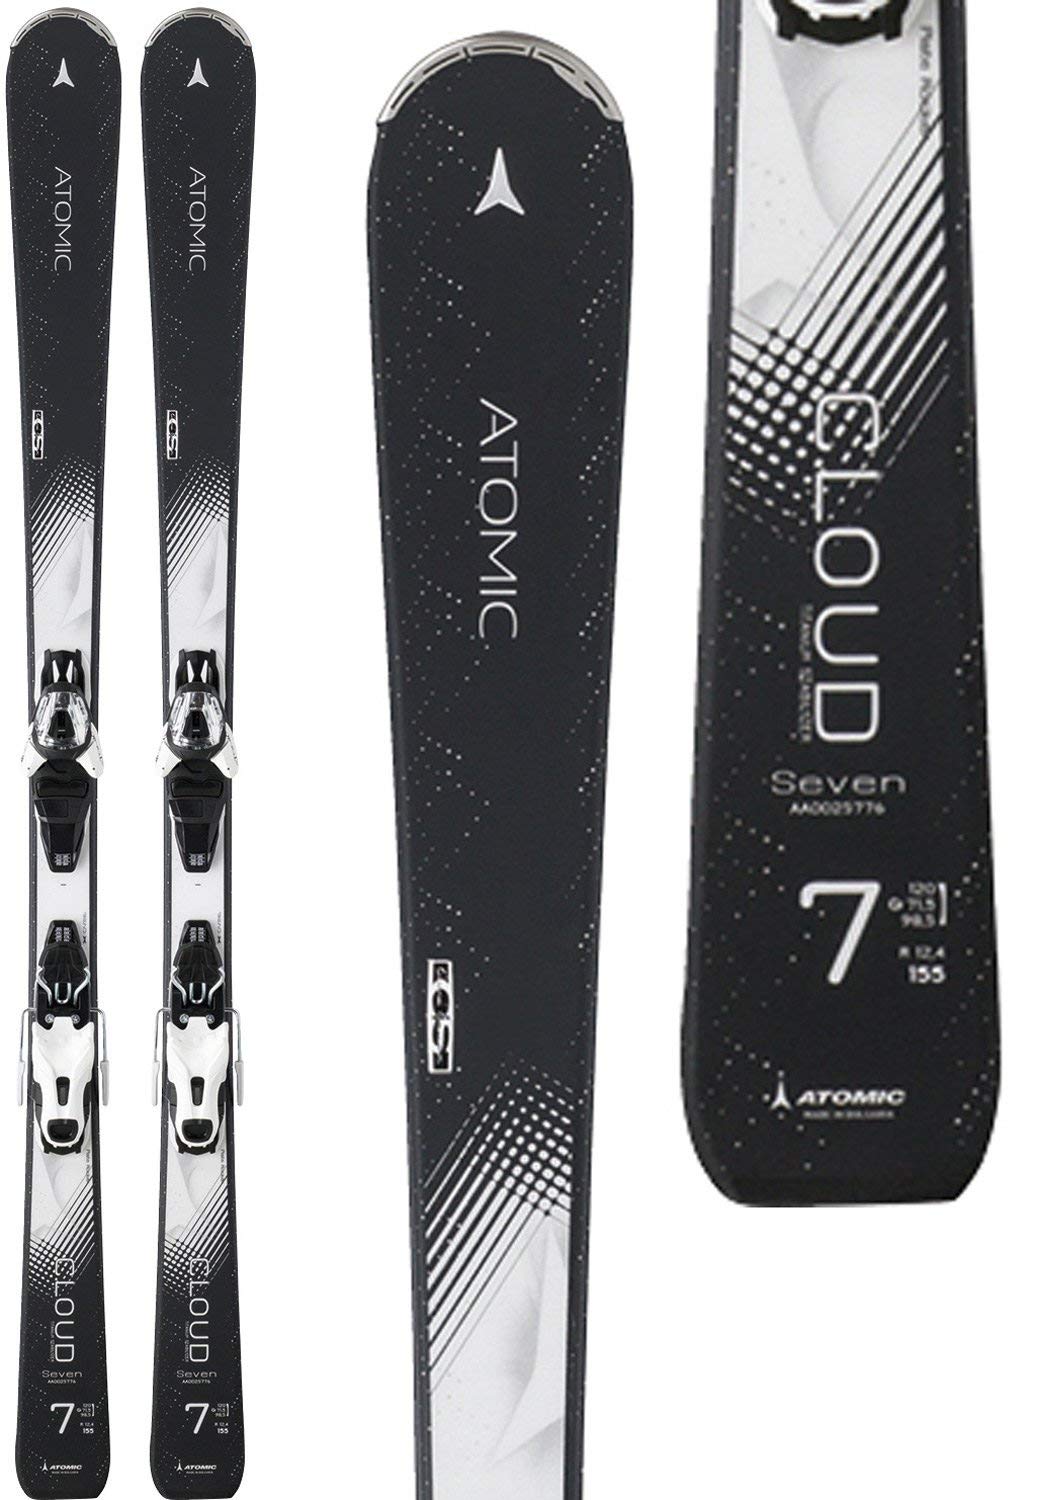 最高のスキー板を選ぶなら！選定基準を明確にしよう | スキー・スノーボード情報メディア | Grab(グラブ)